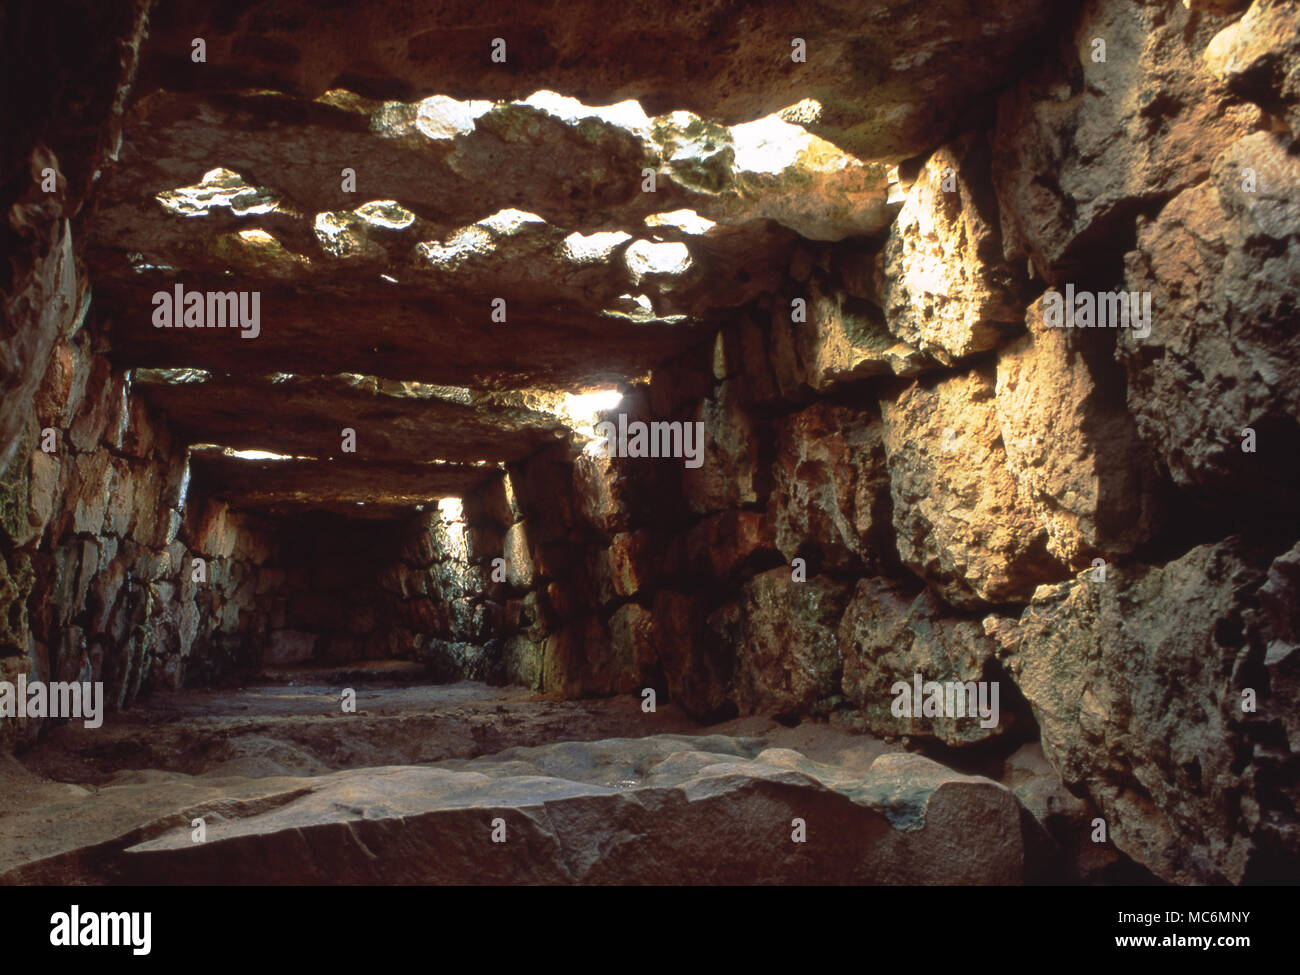 Minorca archeologia. La camera superiore all'interno del Naveta des Tudons, ha detto di essere la più antica costruzione in Europa. (Probabilmente circa 5 mila anni). Questo è stato usato come un area di sepoltura e oltre 50 corpi sono stati trovati durante gli scavi. Foto Stock